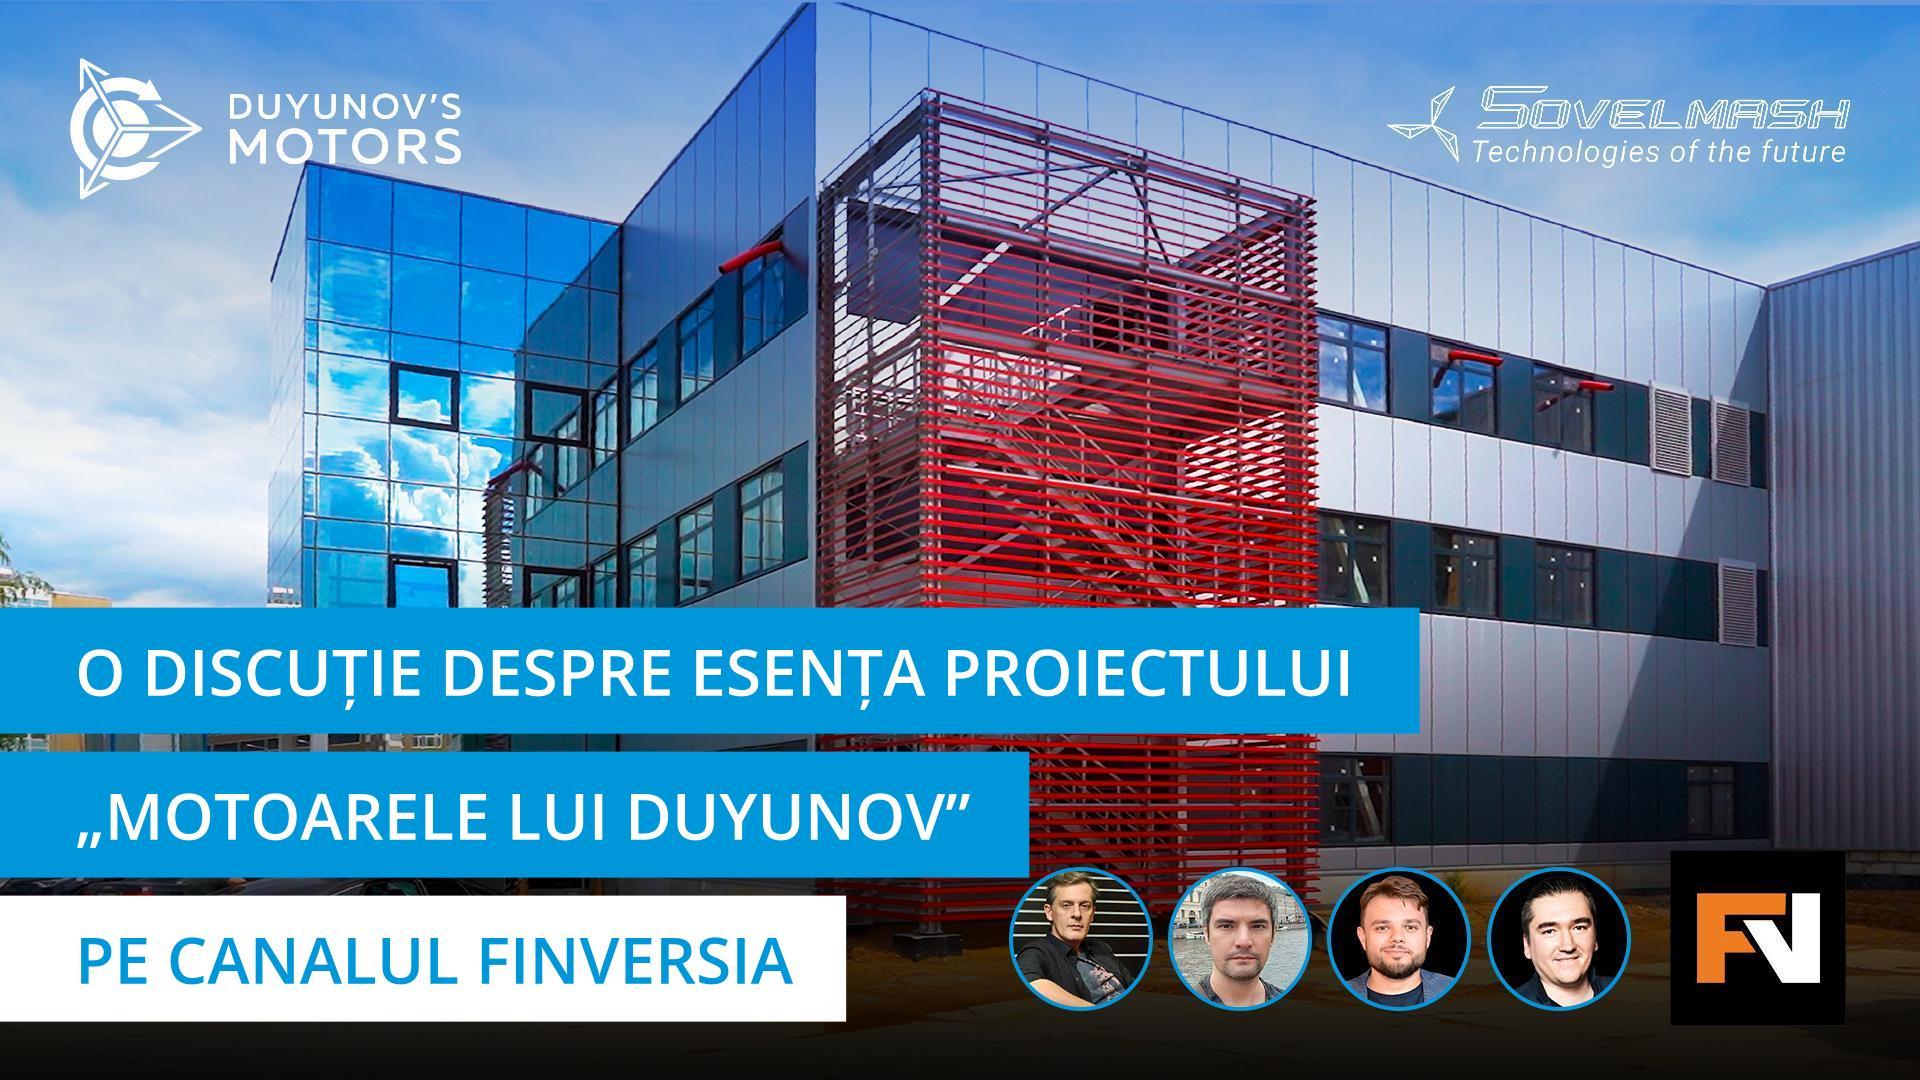 Transmisiunea în direct cu Aleksandr Sudarev și investitorii proiectului pe canalul de YouTube Finversia